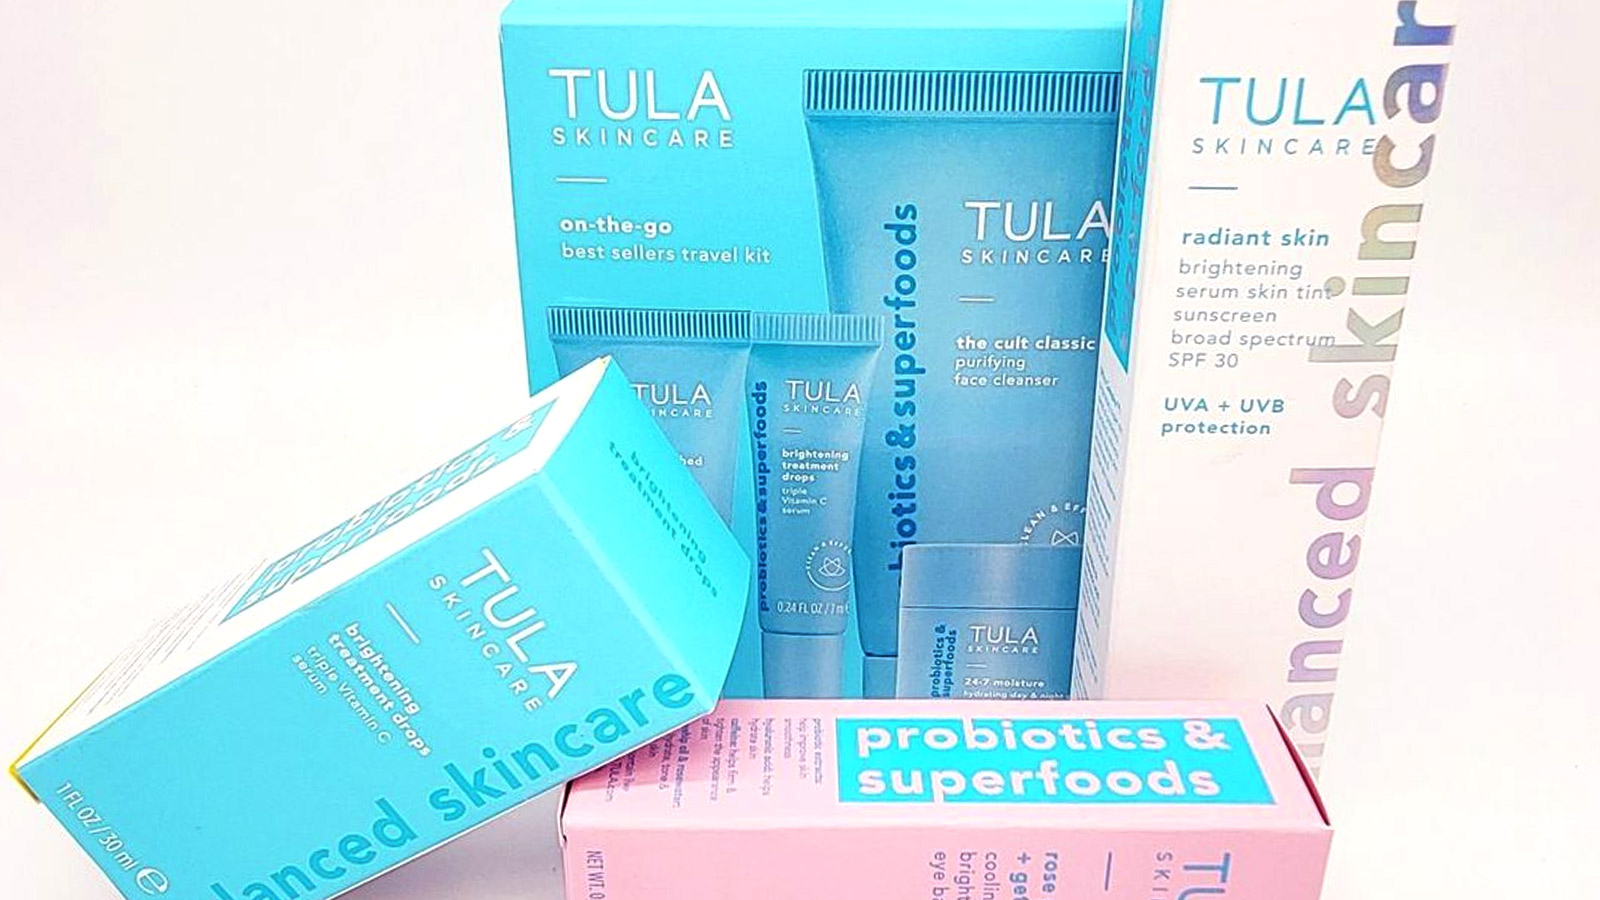 Tula custom packaging